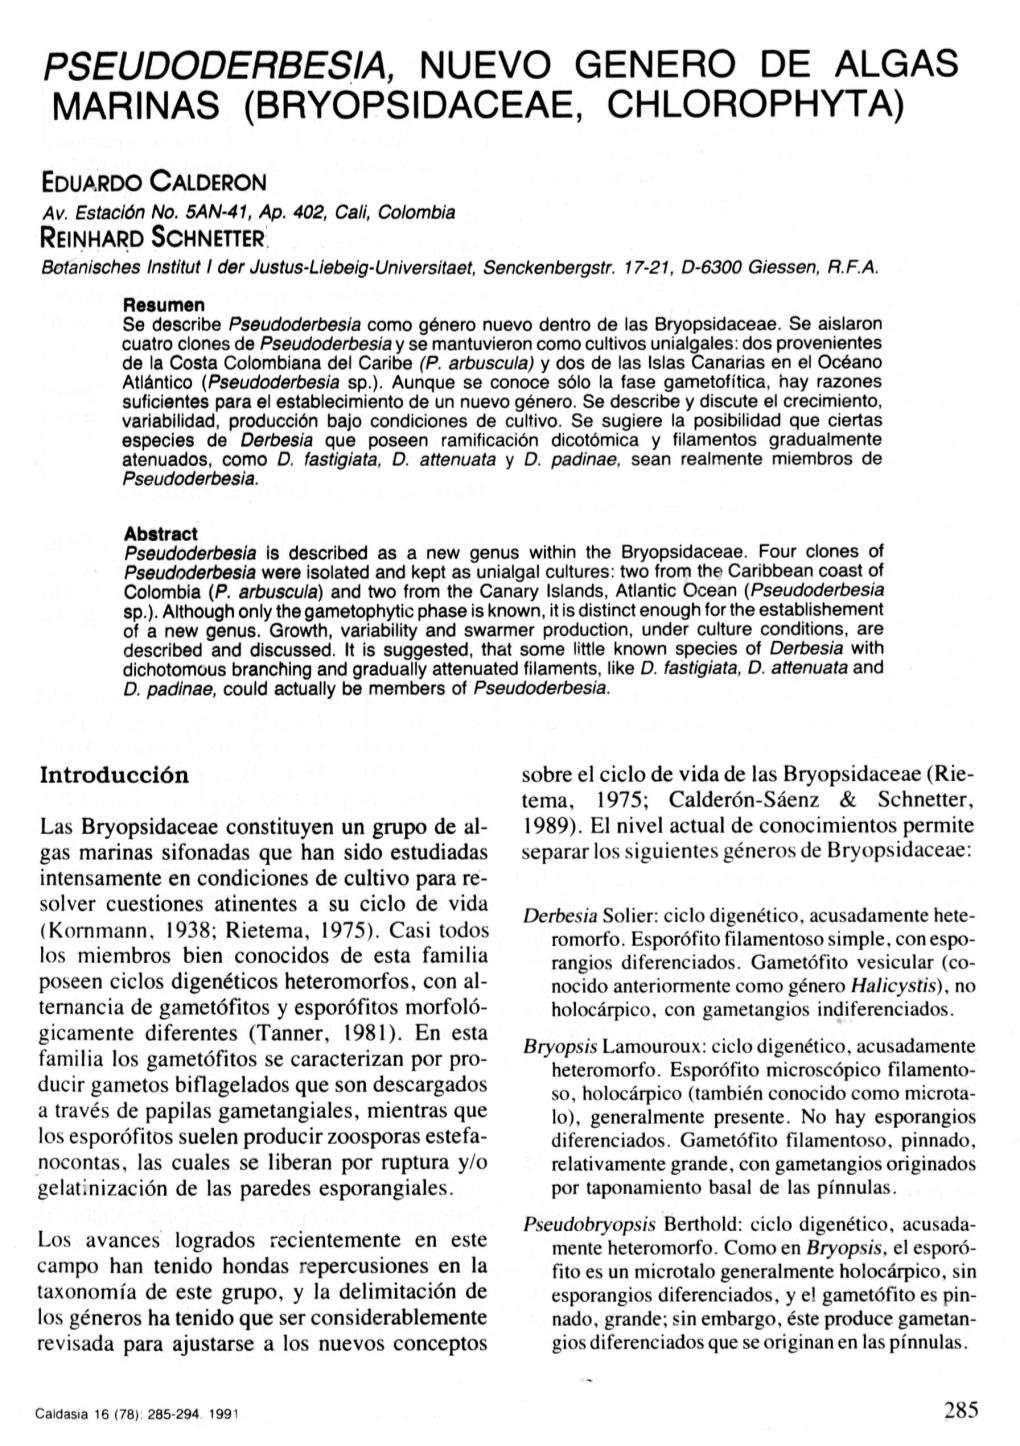 Nuevo Genero De Algas Marinas (Bryopsidaceae, Chlorophyta)